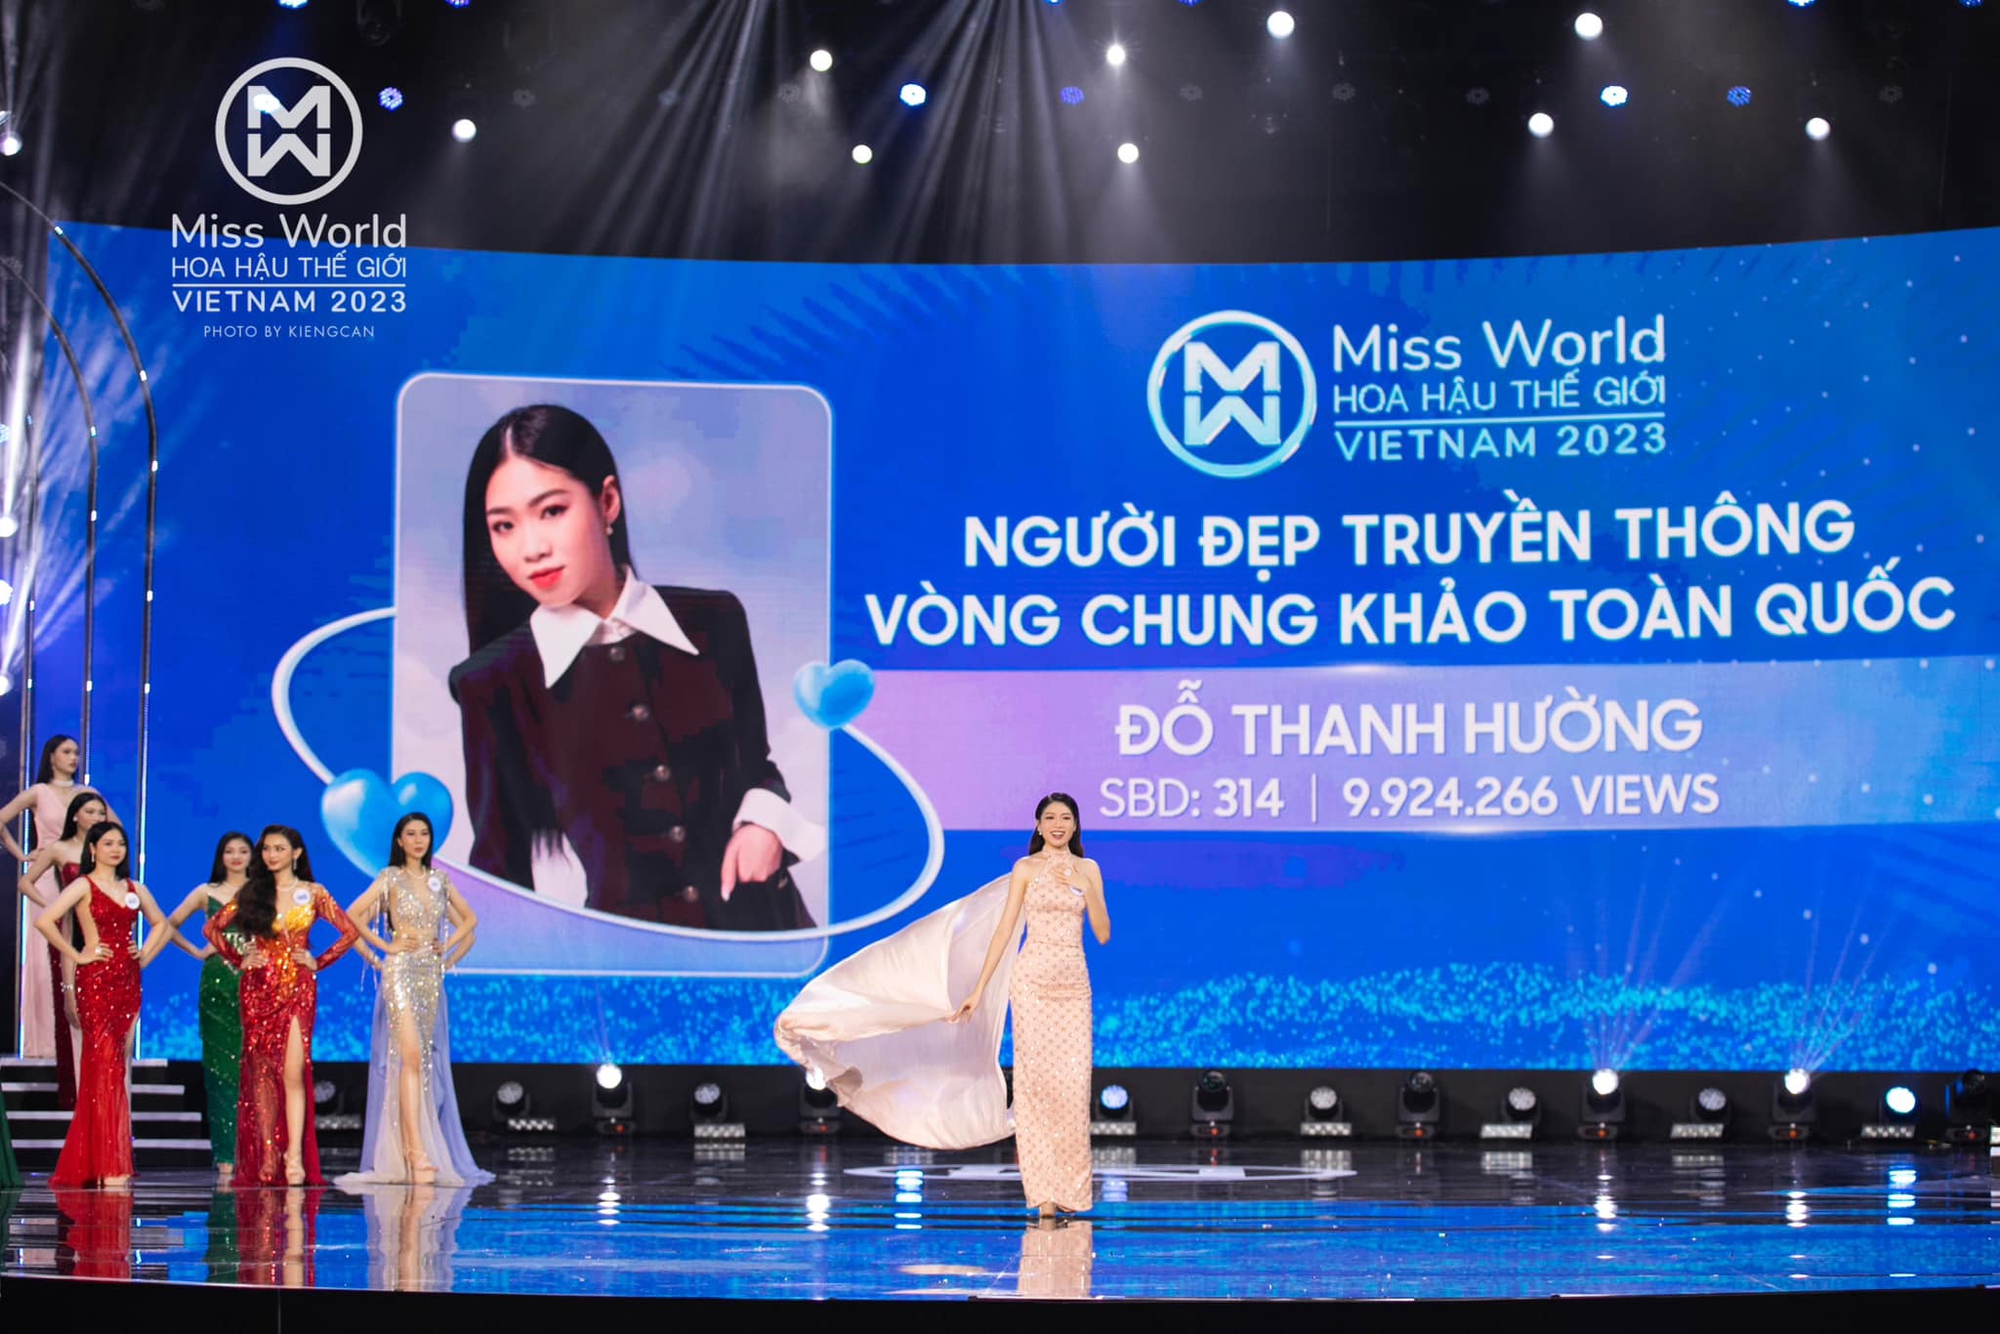 Nhan sắc xứ Thanh 'triệu view' giành Người đẹp truyền thông Miss World Vietnam 2023 là ai? - Ảnh 2.